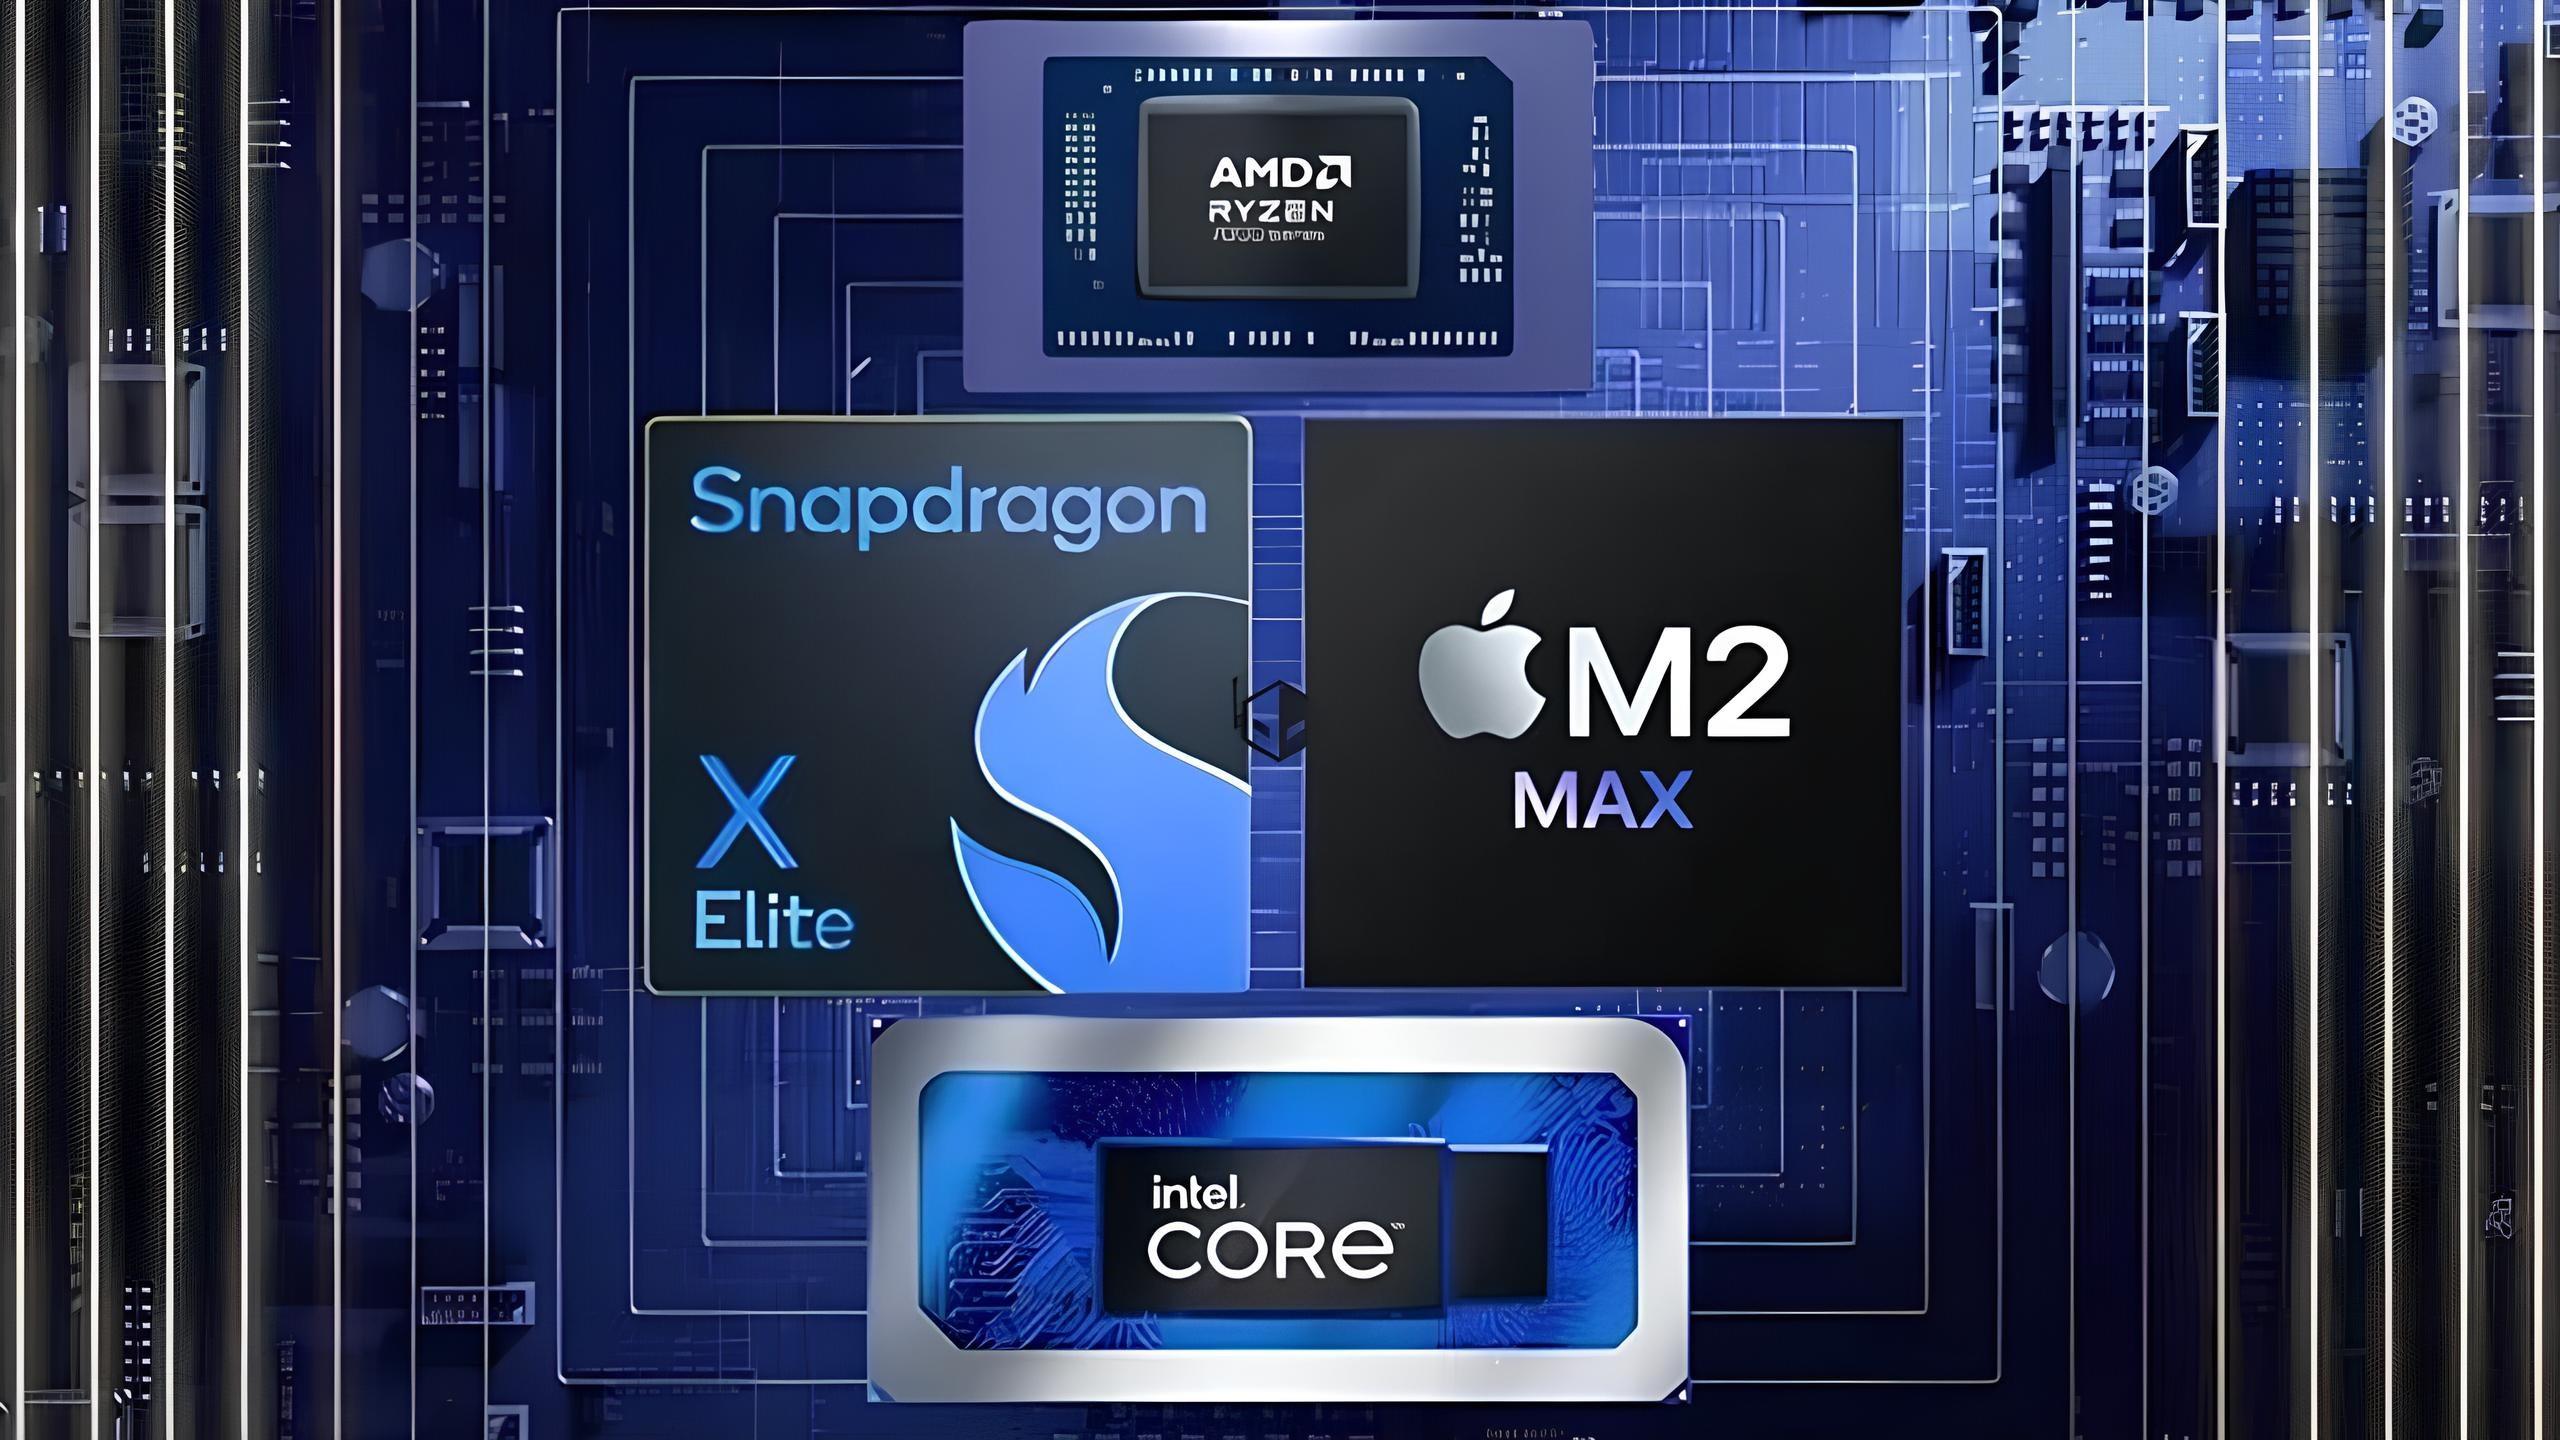 Snapdragon X Seçkine için birinci fiyat bilgisi paylaşıldı: Cep yakacak